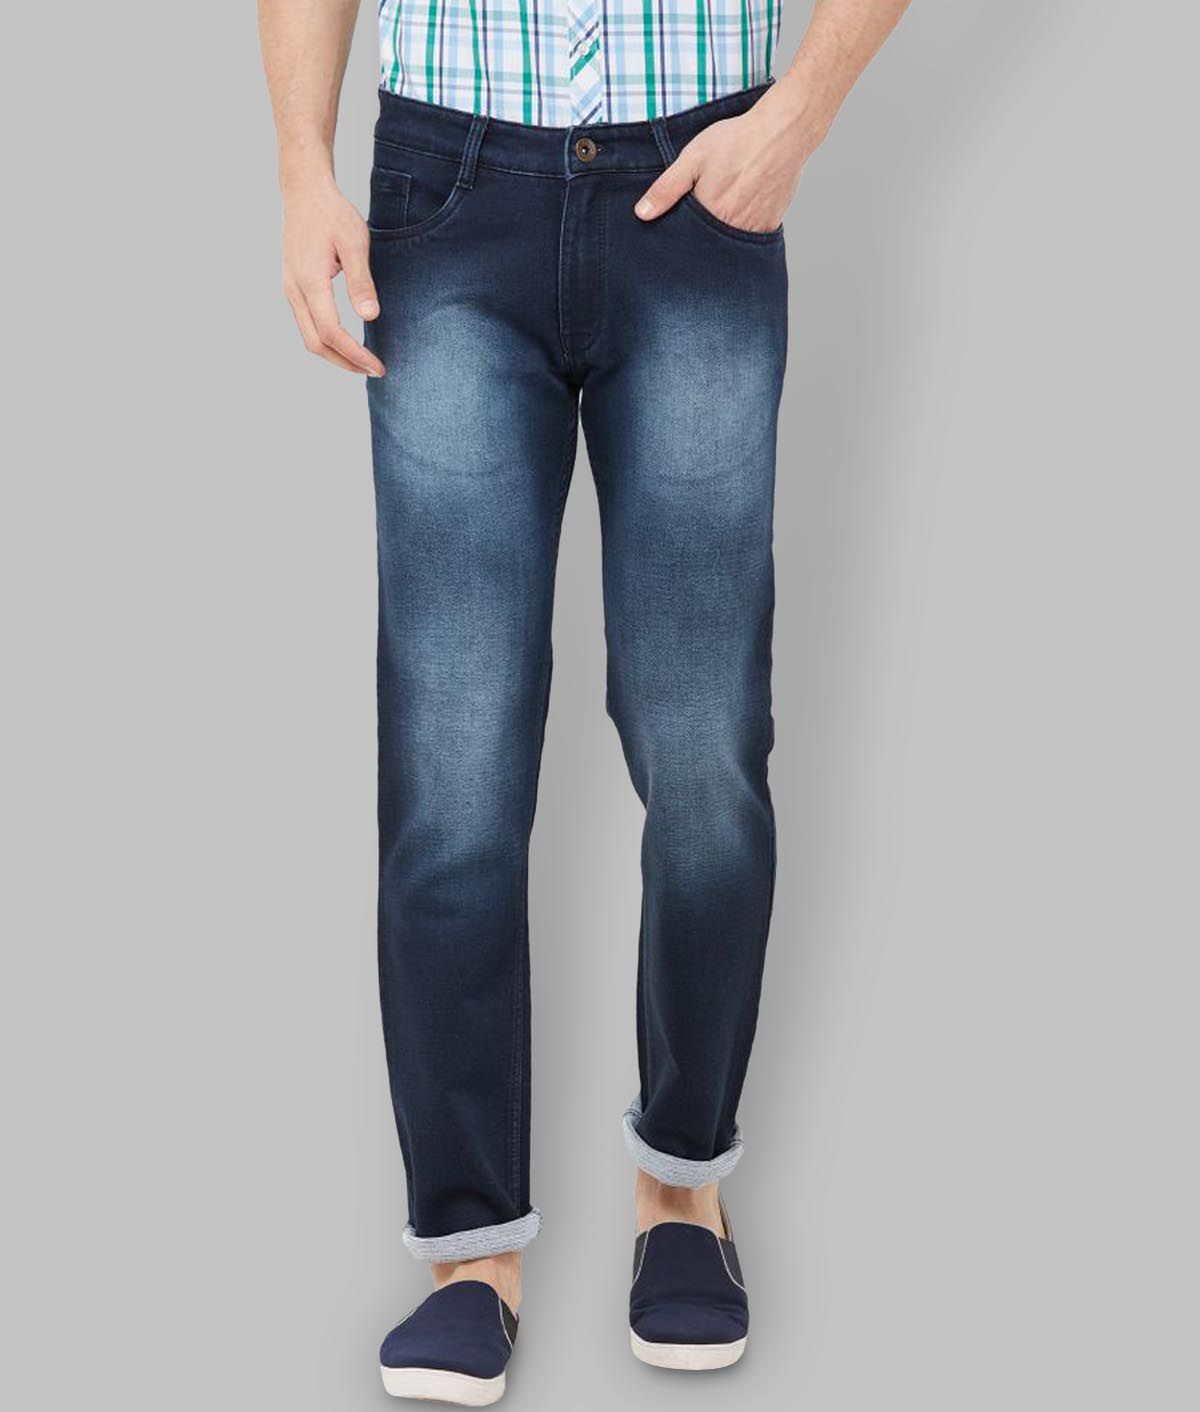 Solemio Navy Blue Slim Jeans